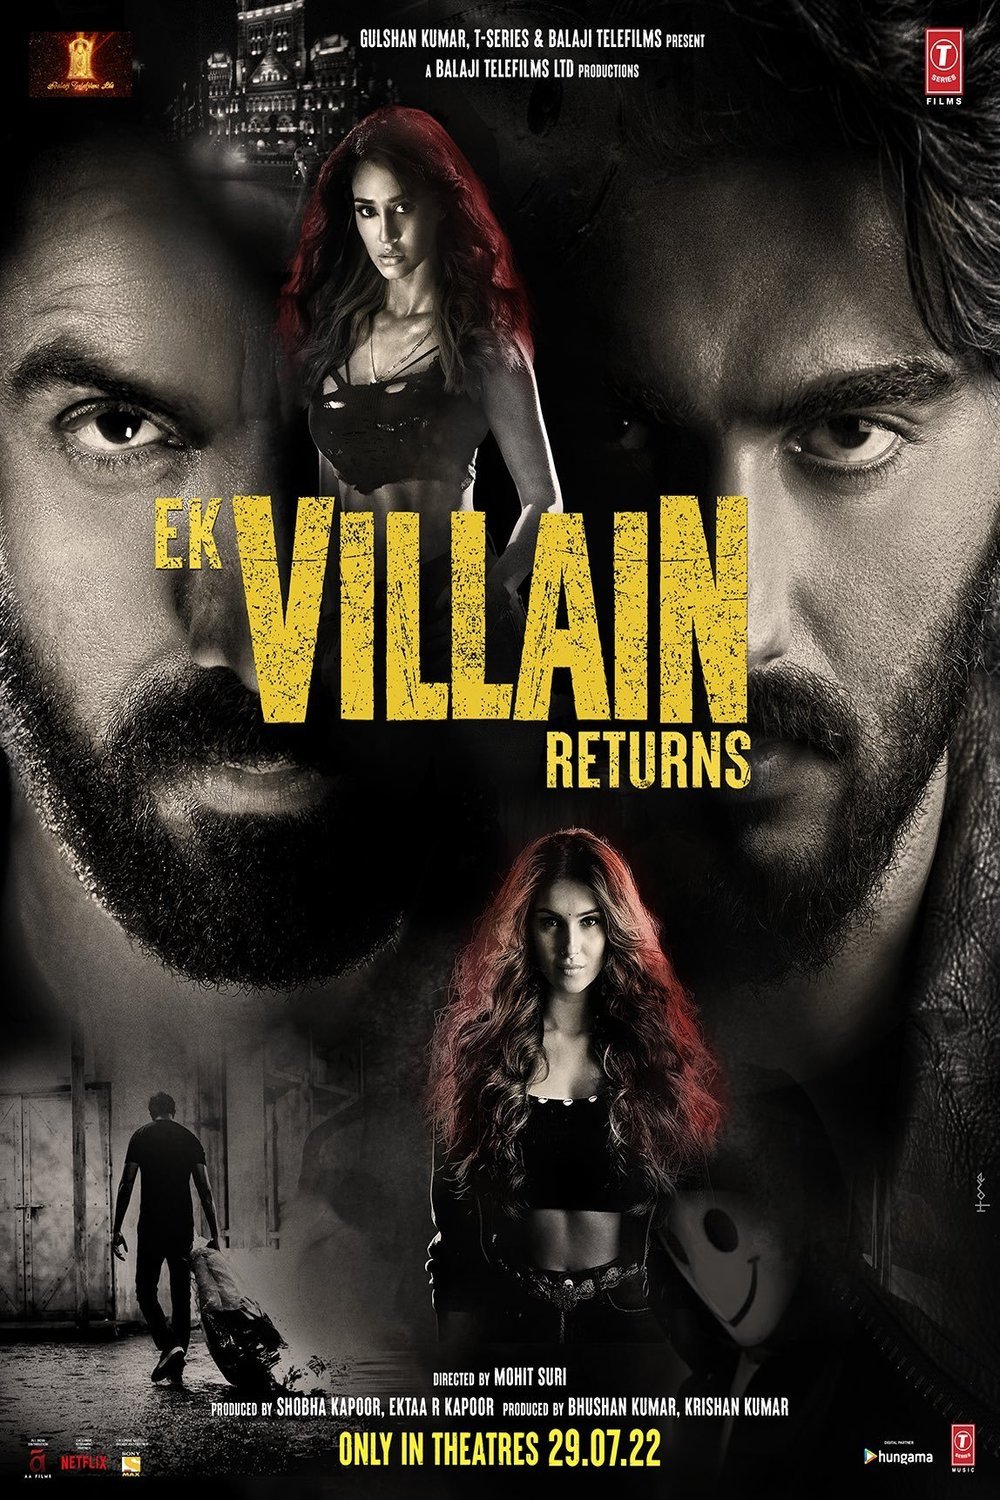 L'affiche originale du film Ek Villain 2 en Hindi